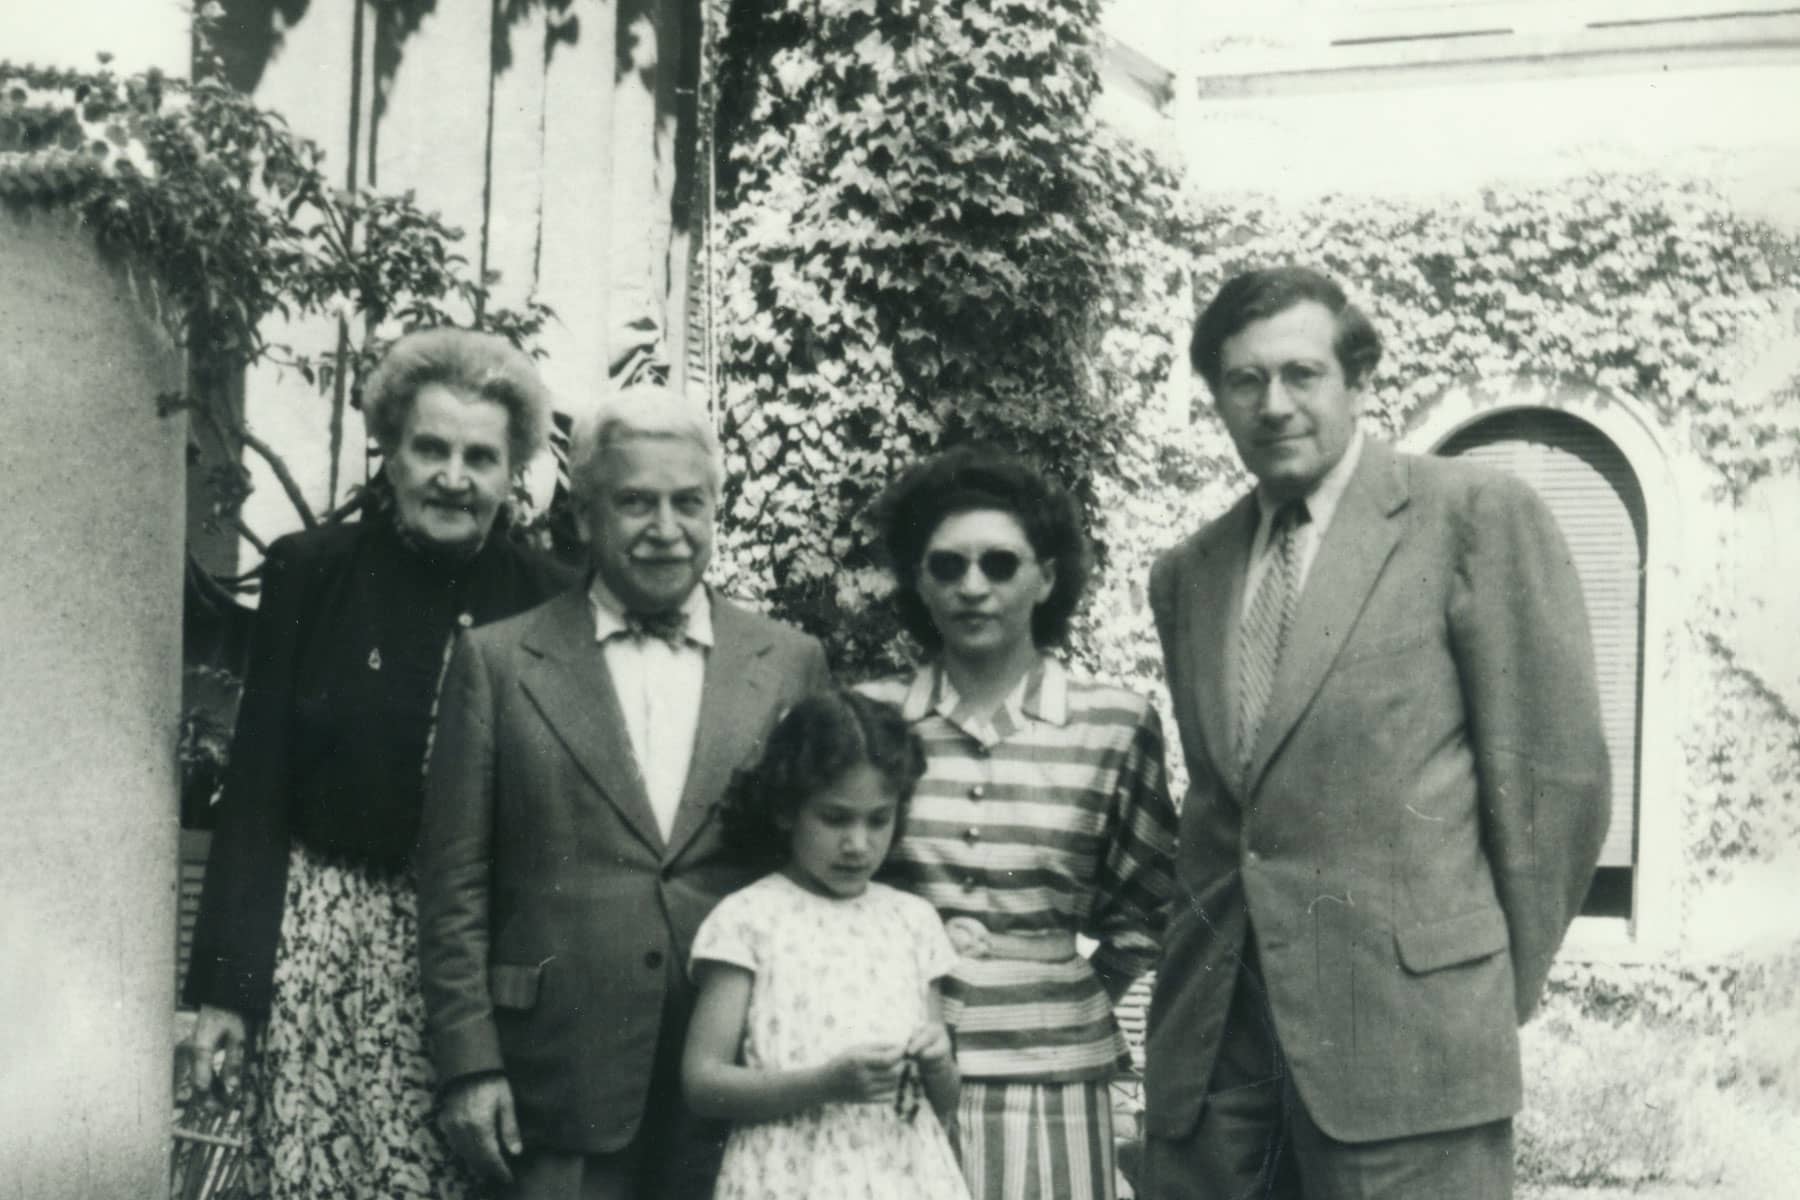 Mostra Artur Schnabel e la sua famiglia - Tremezzina